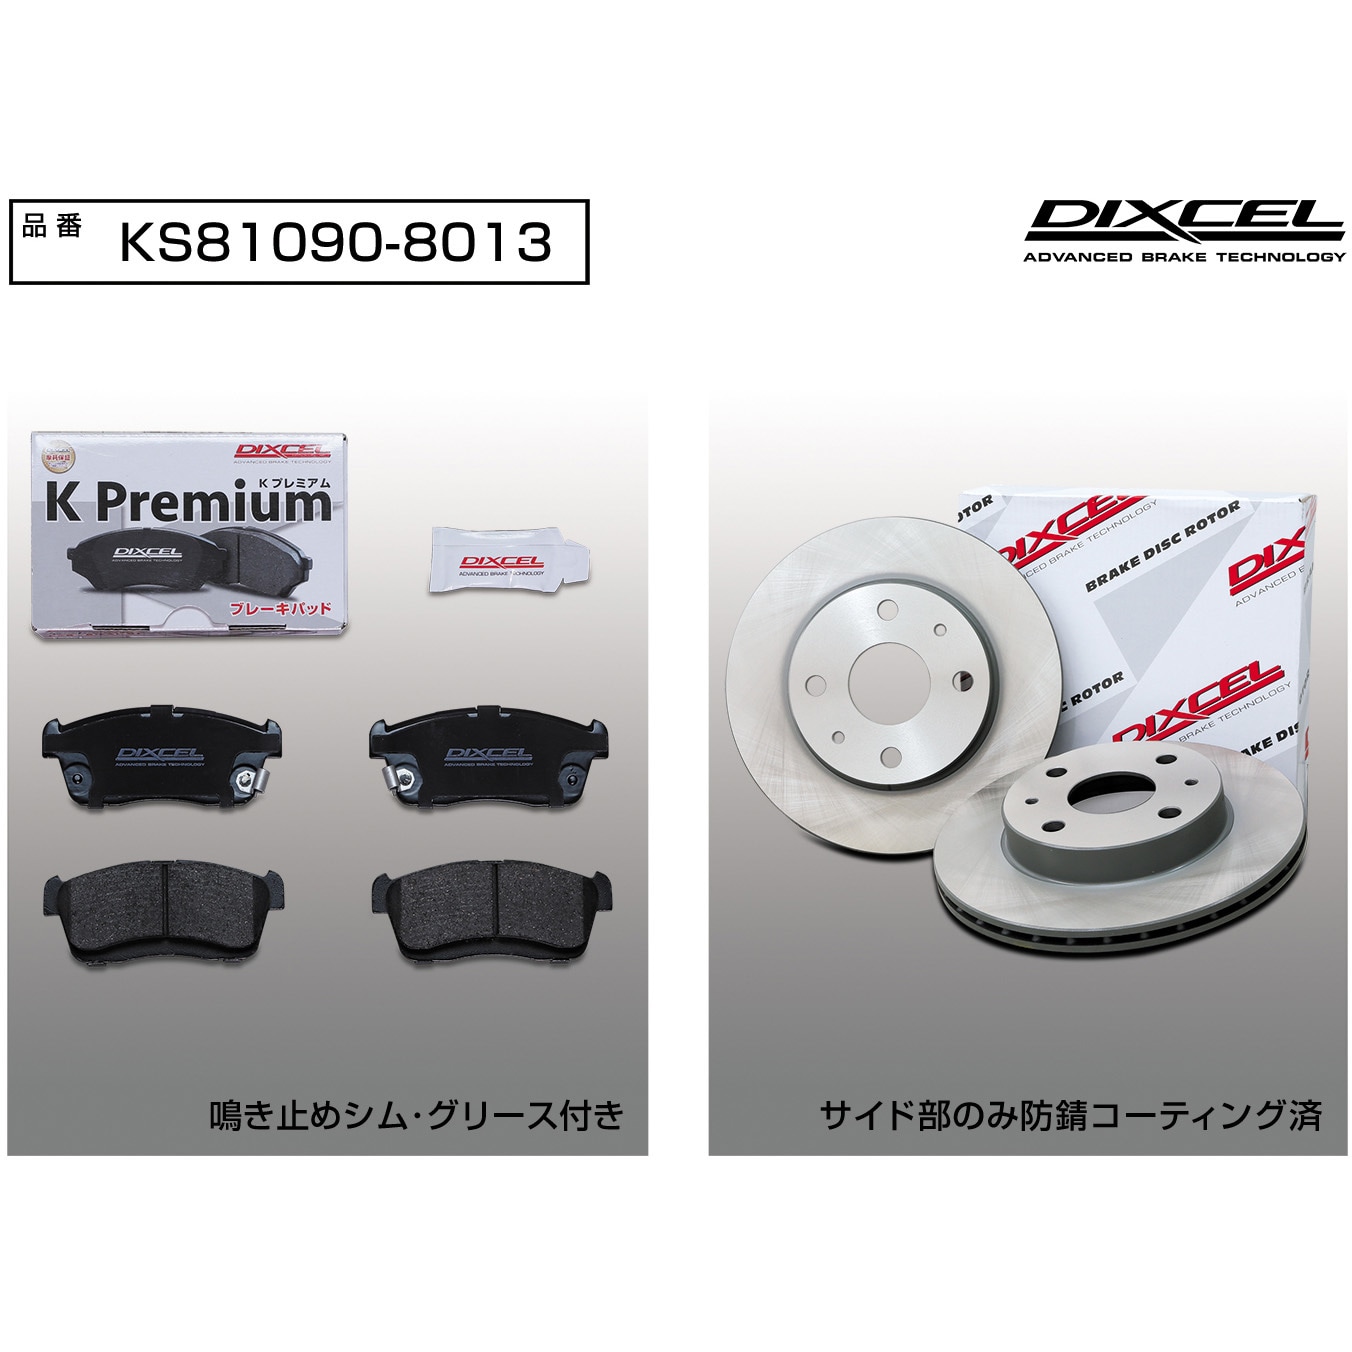 KS81090-8013 ブレーキパッドKP+ローターKDセット(KSタイプ) 1セット 